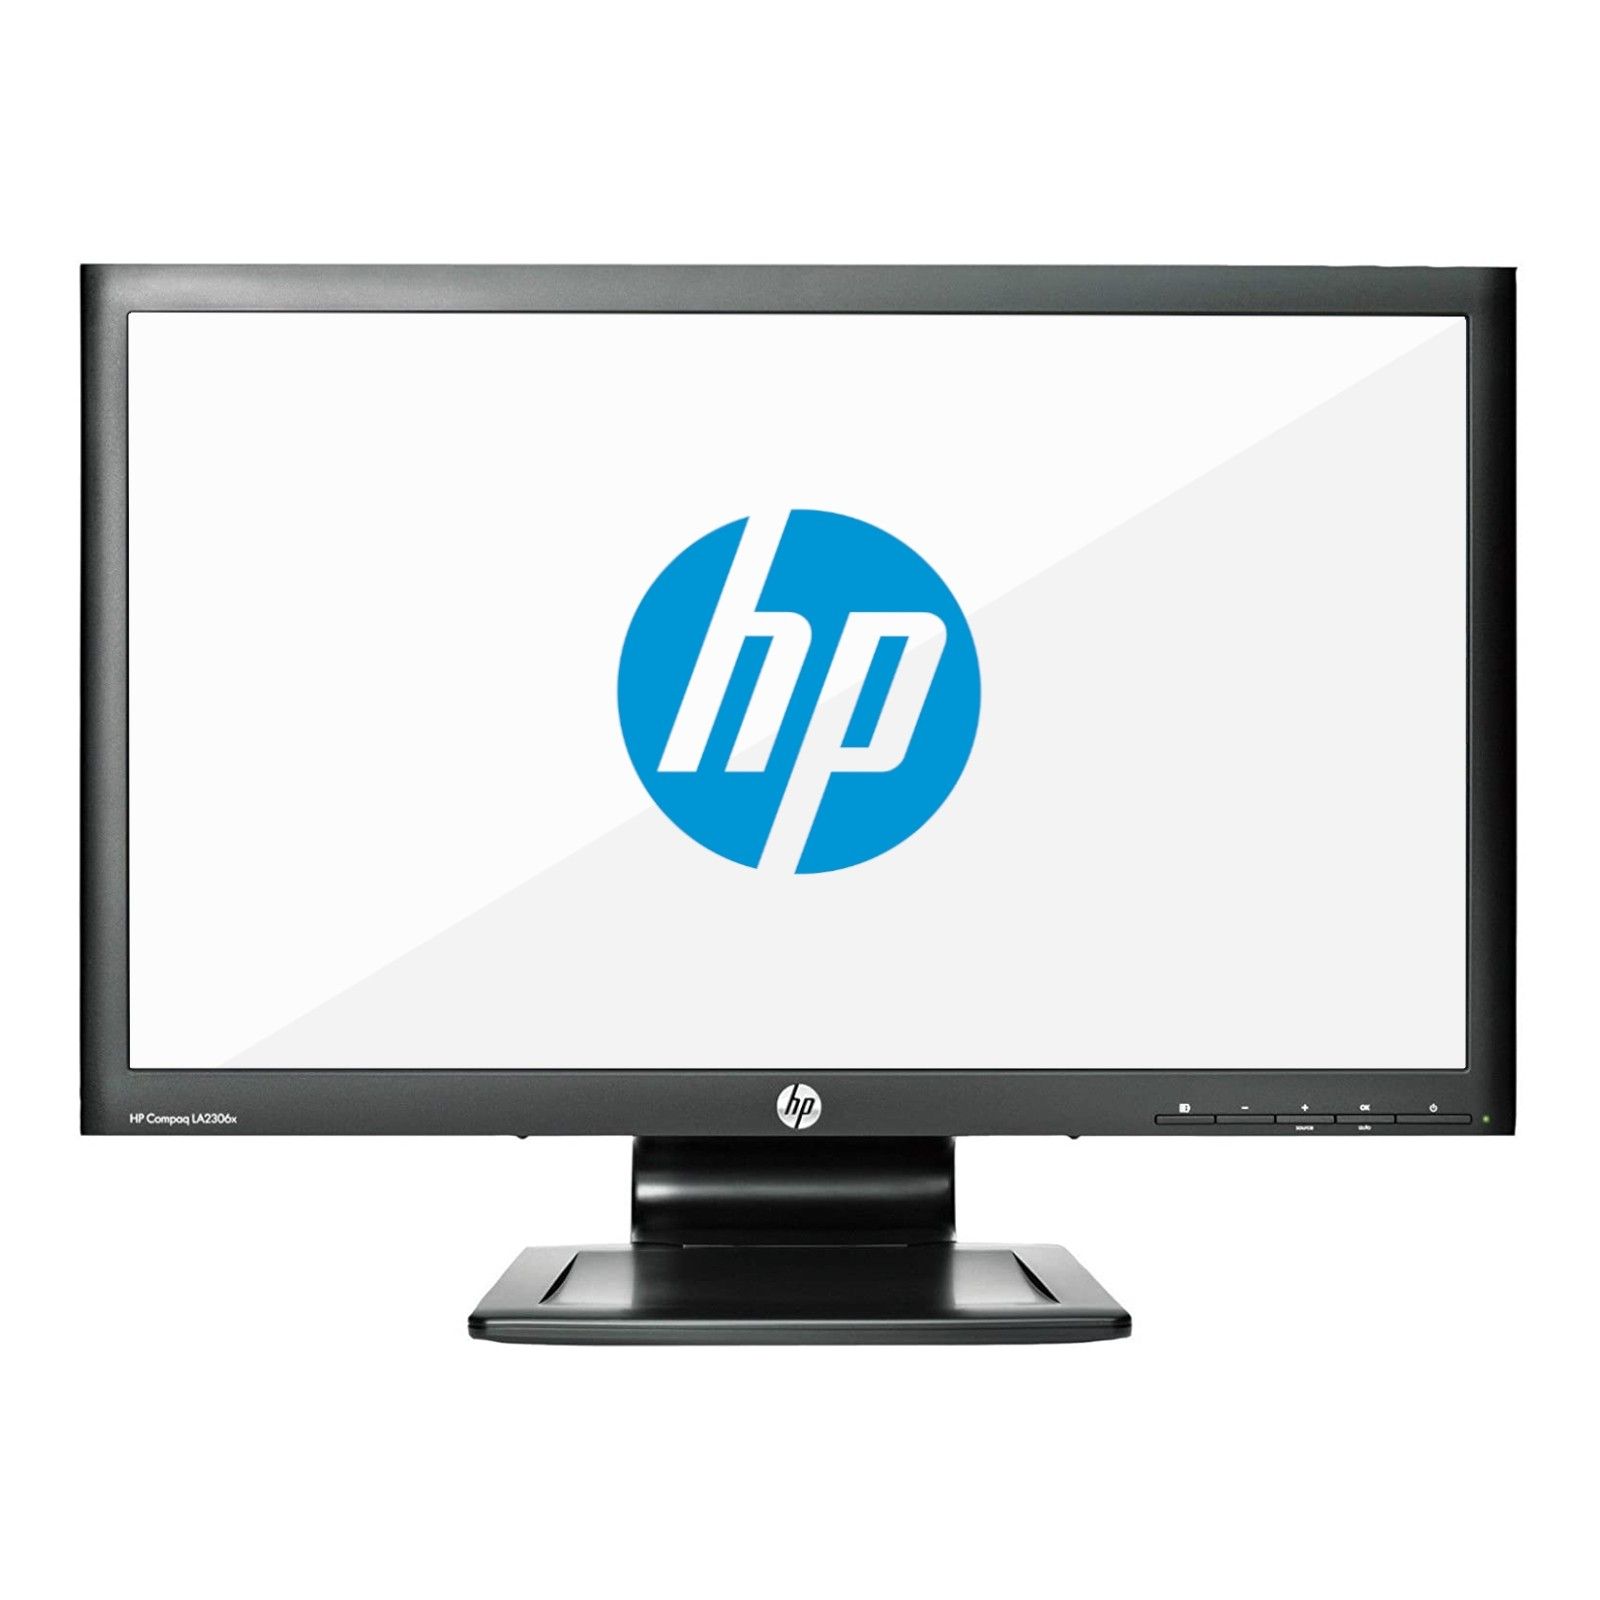 HP Compaq LA2306x 23" monitor B kategória